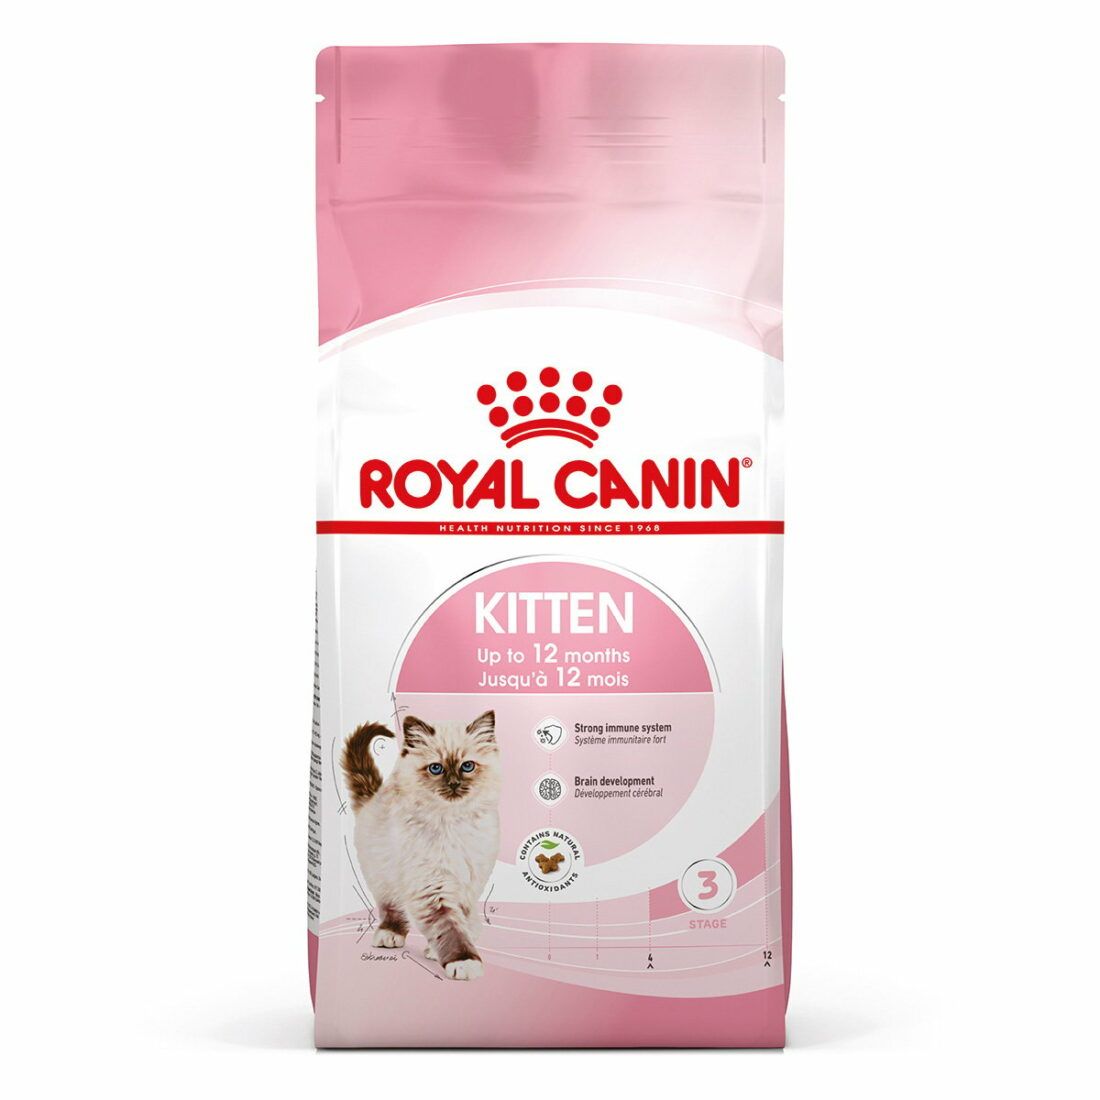 Royal Canin Kitten 10